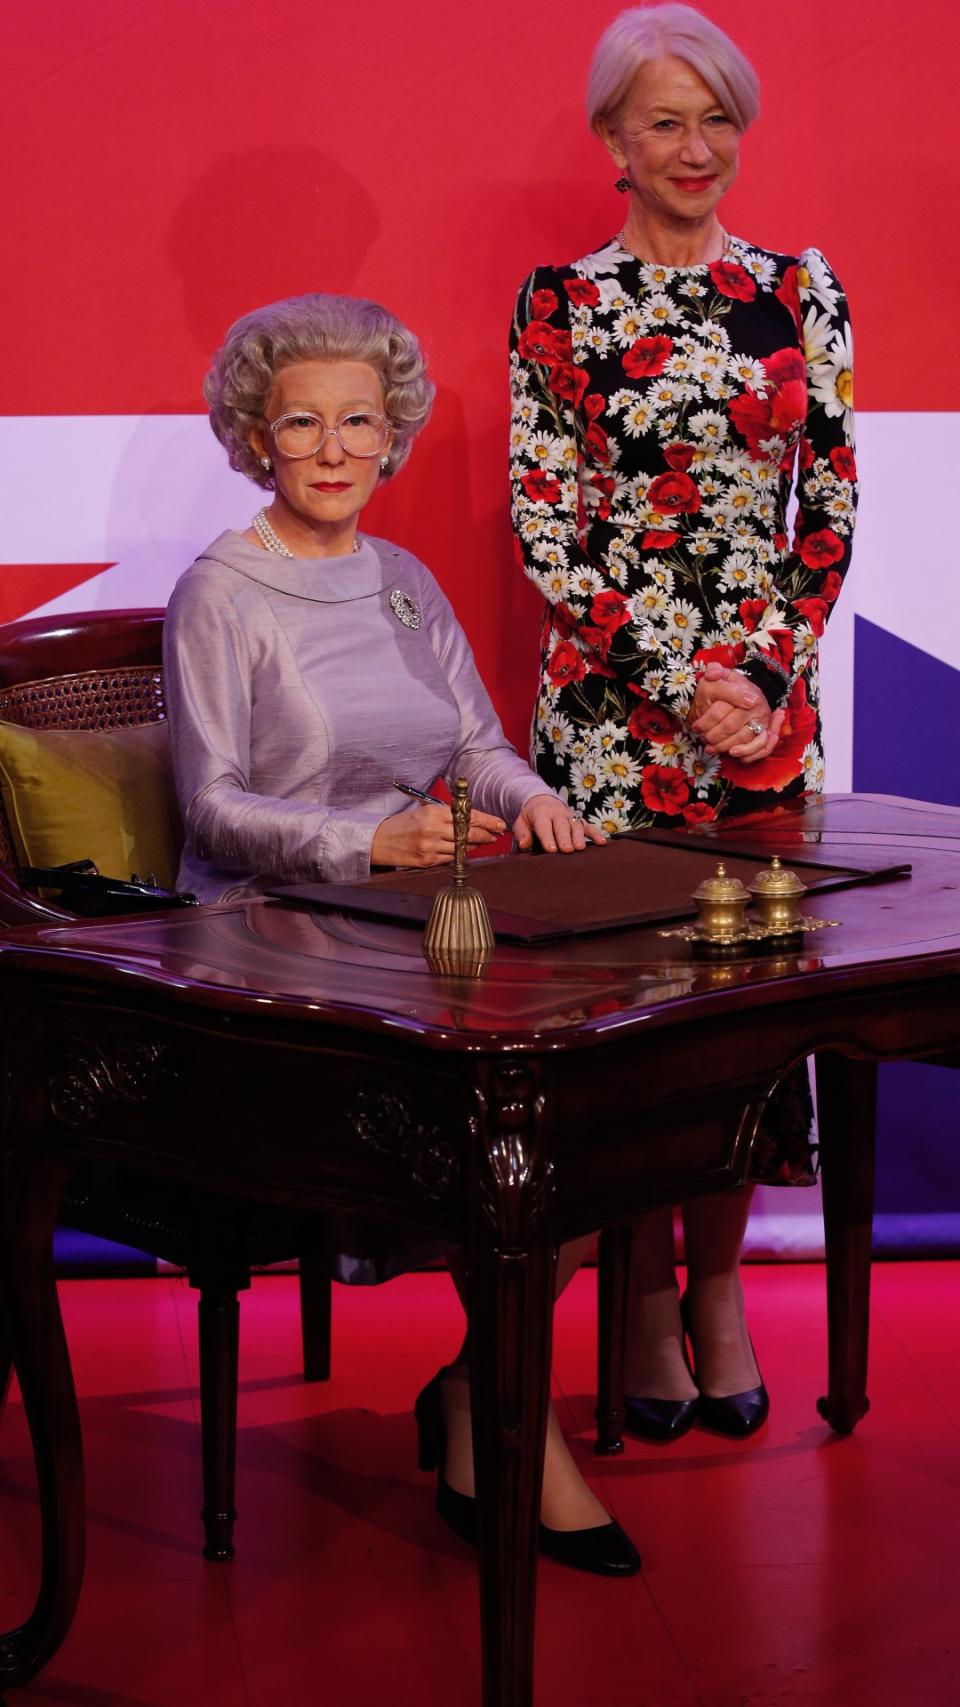 Helen Mirren next to a waxwork of the late Queen Elizabeth